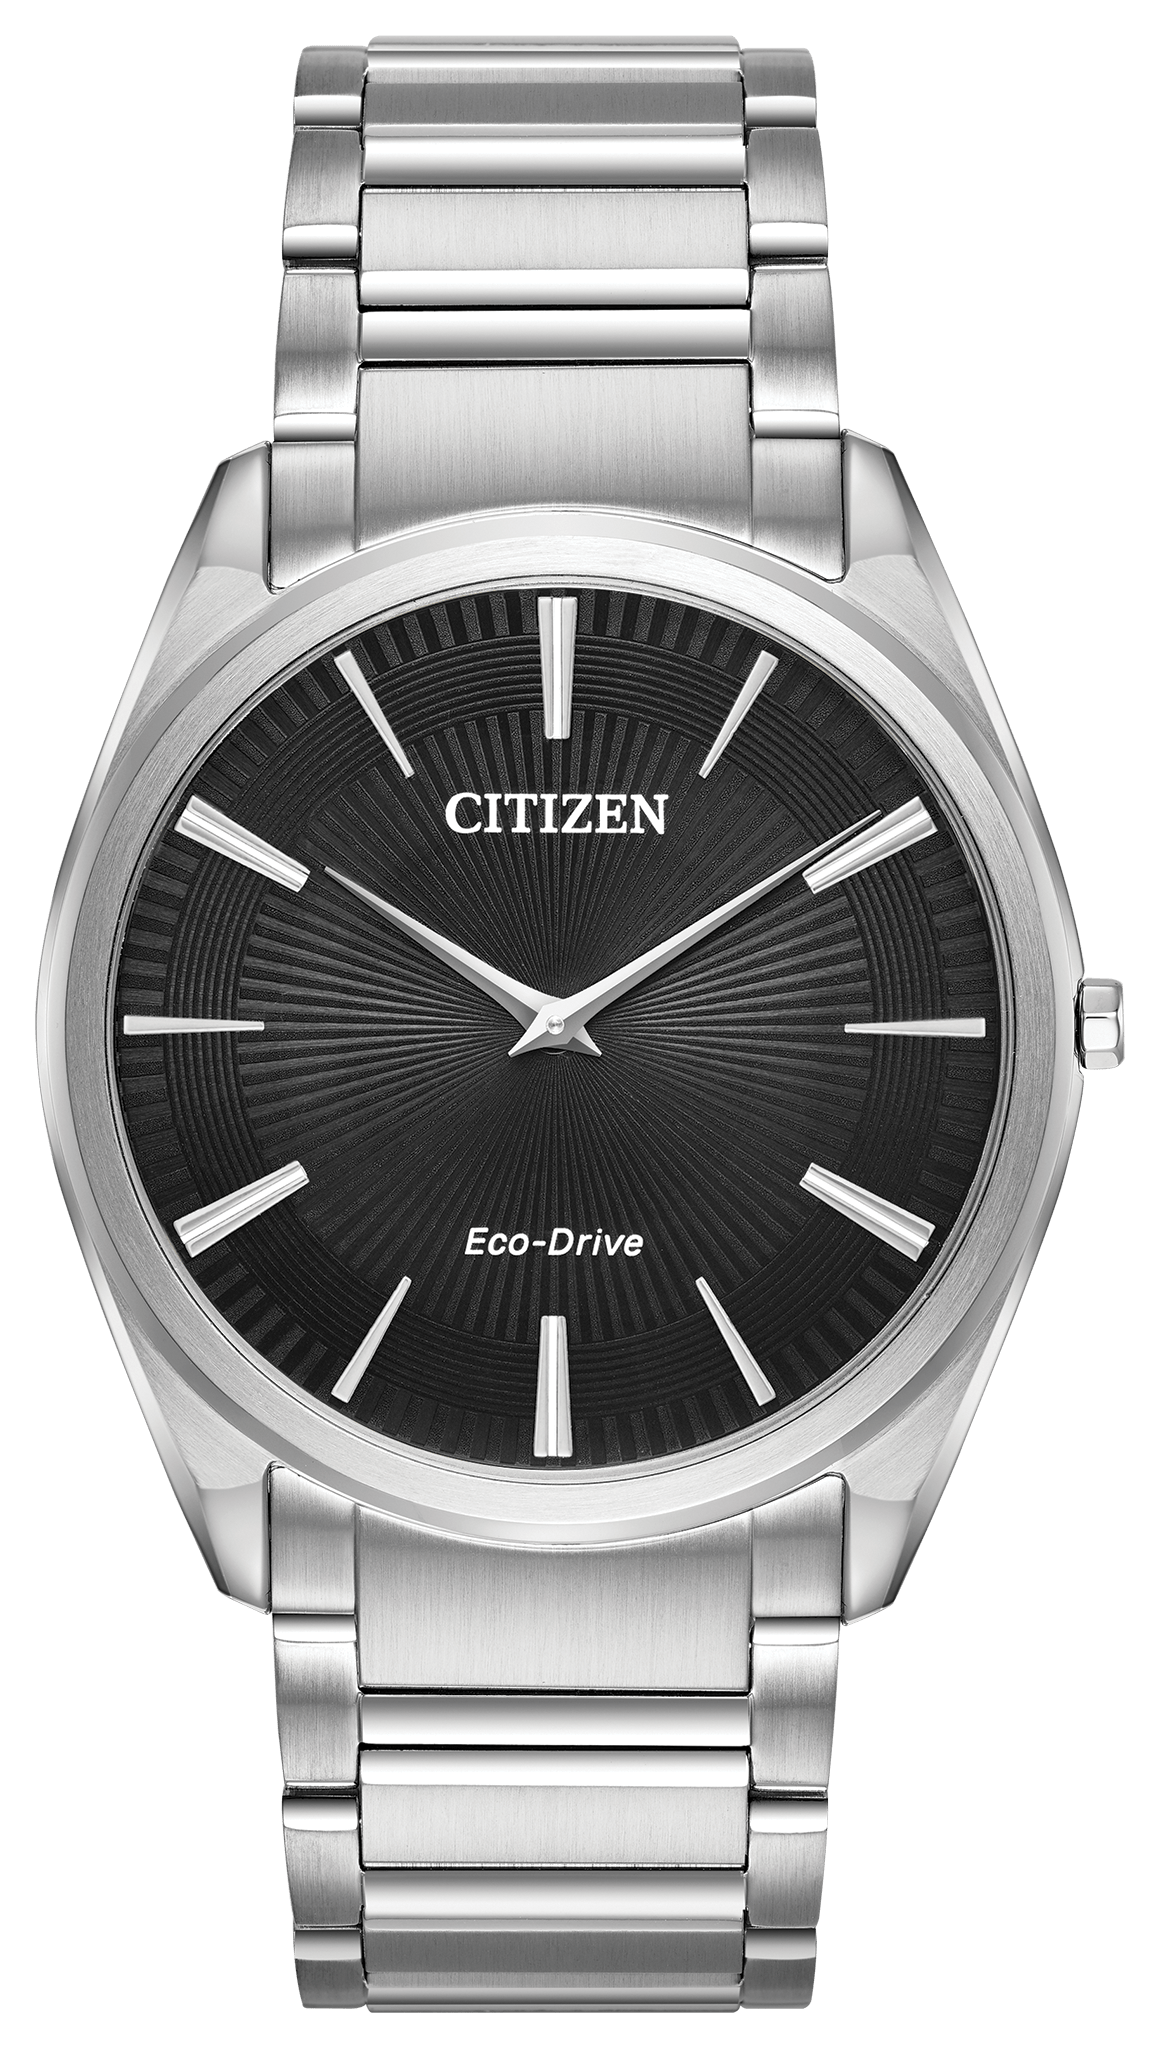 Citizen STILETTO AR3070-55E - M&R Jewelers